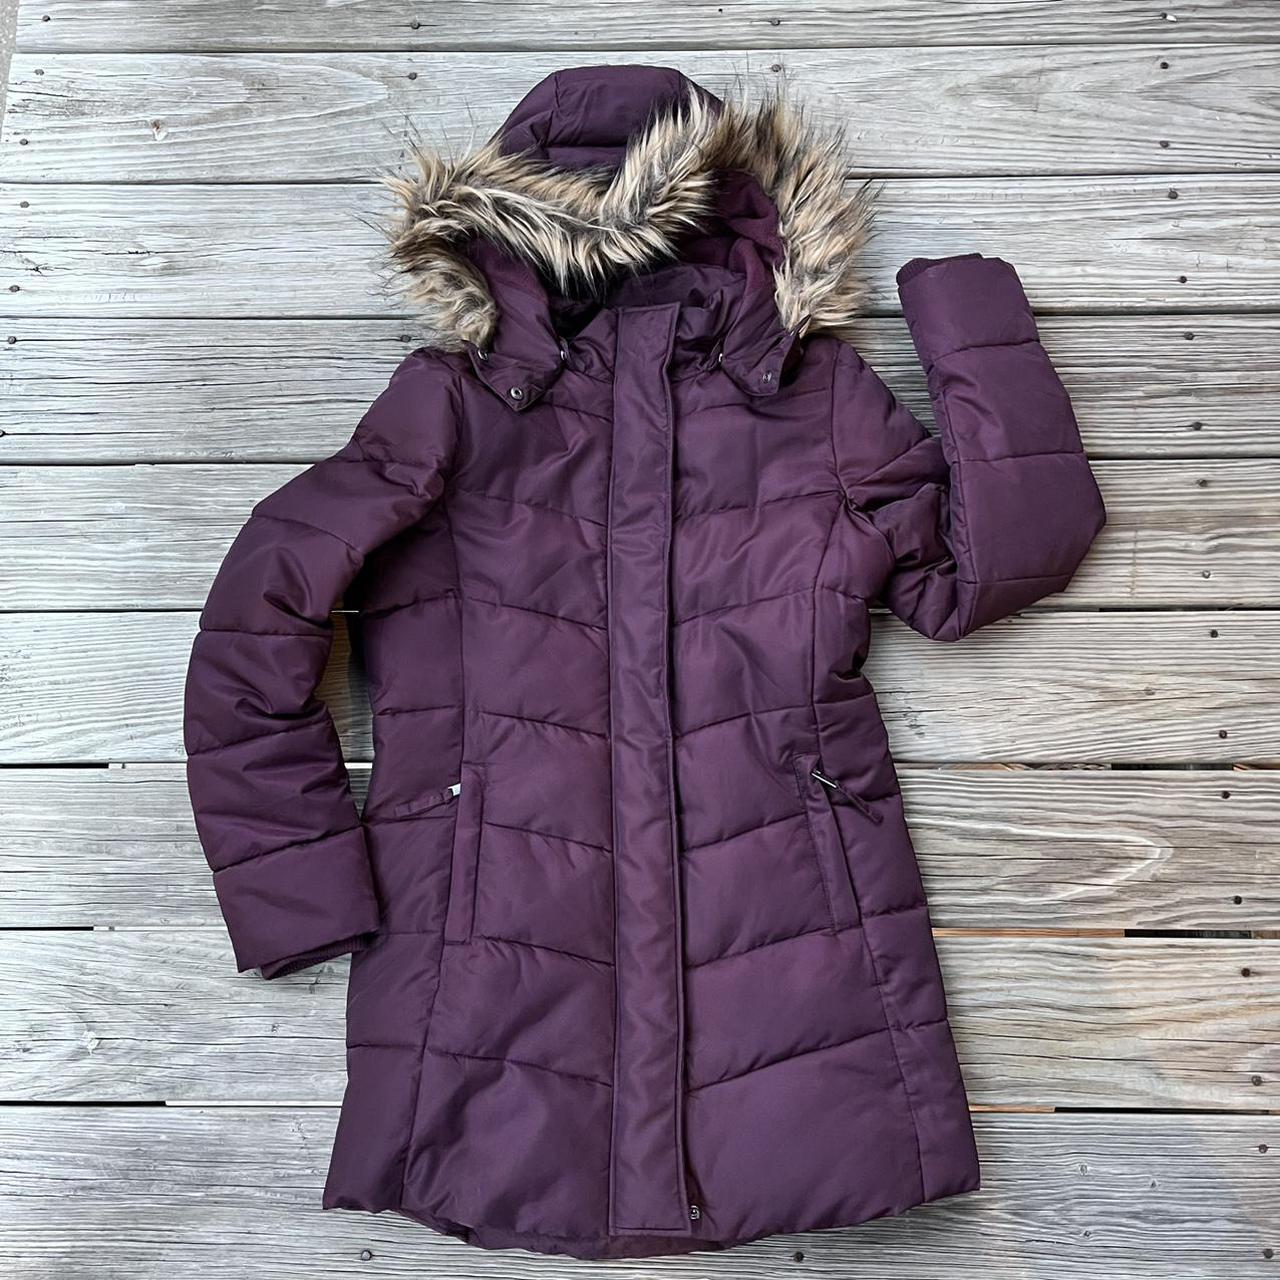 H&M burgundy parka puffer jacket— gently used,... - Depop